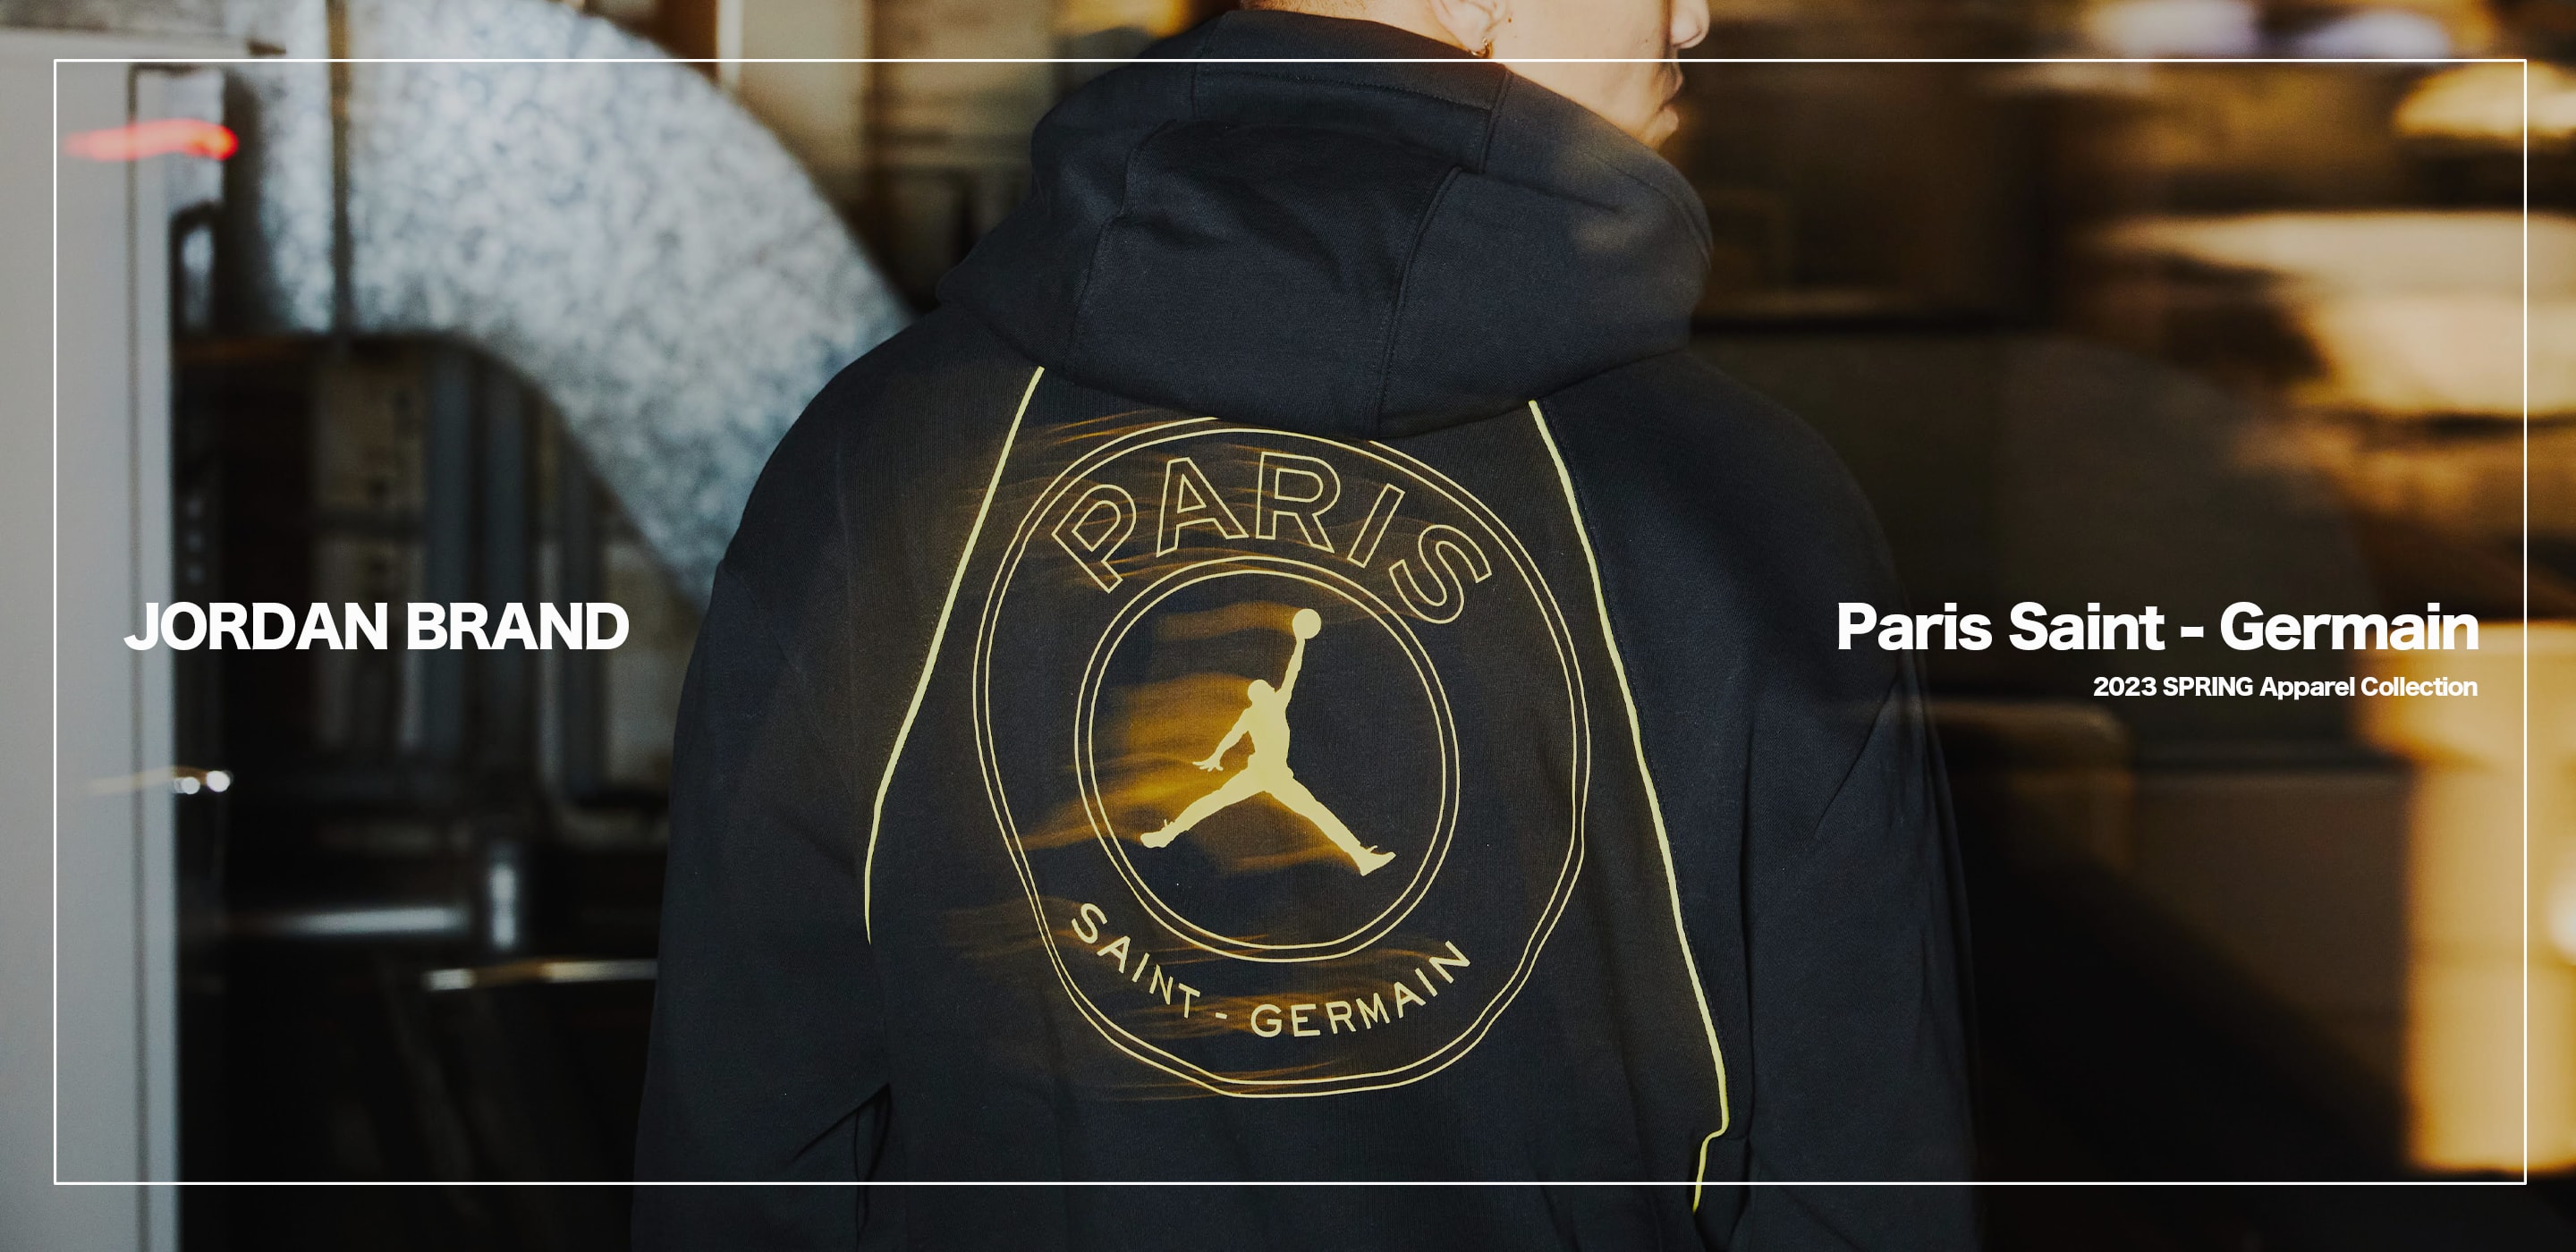 "Jordan x Paris Saint - Germain 2023 SPRING Apparel Collection"